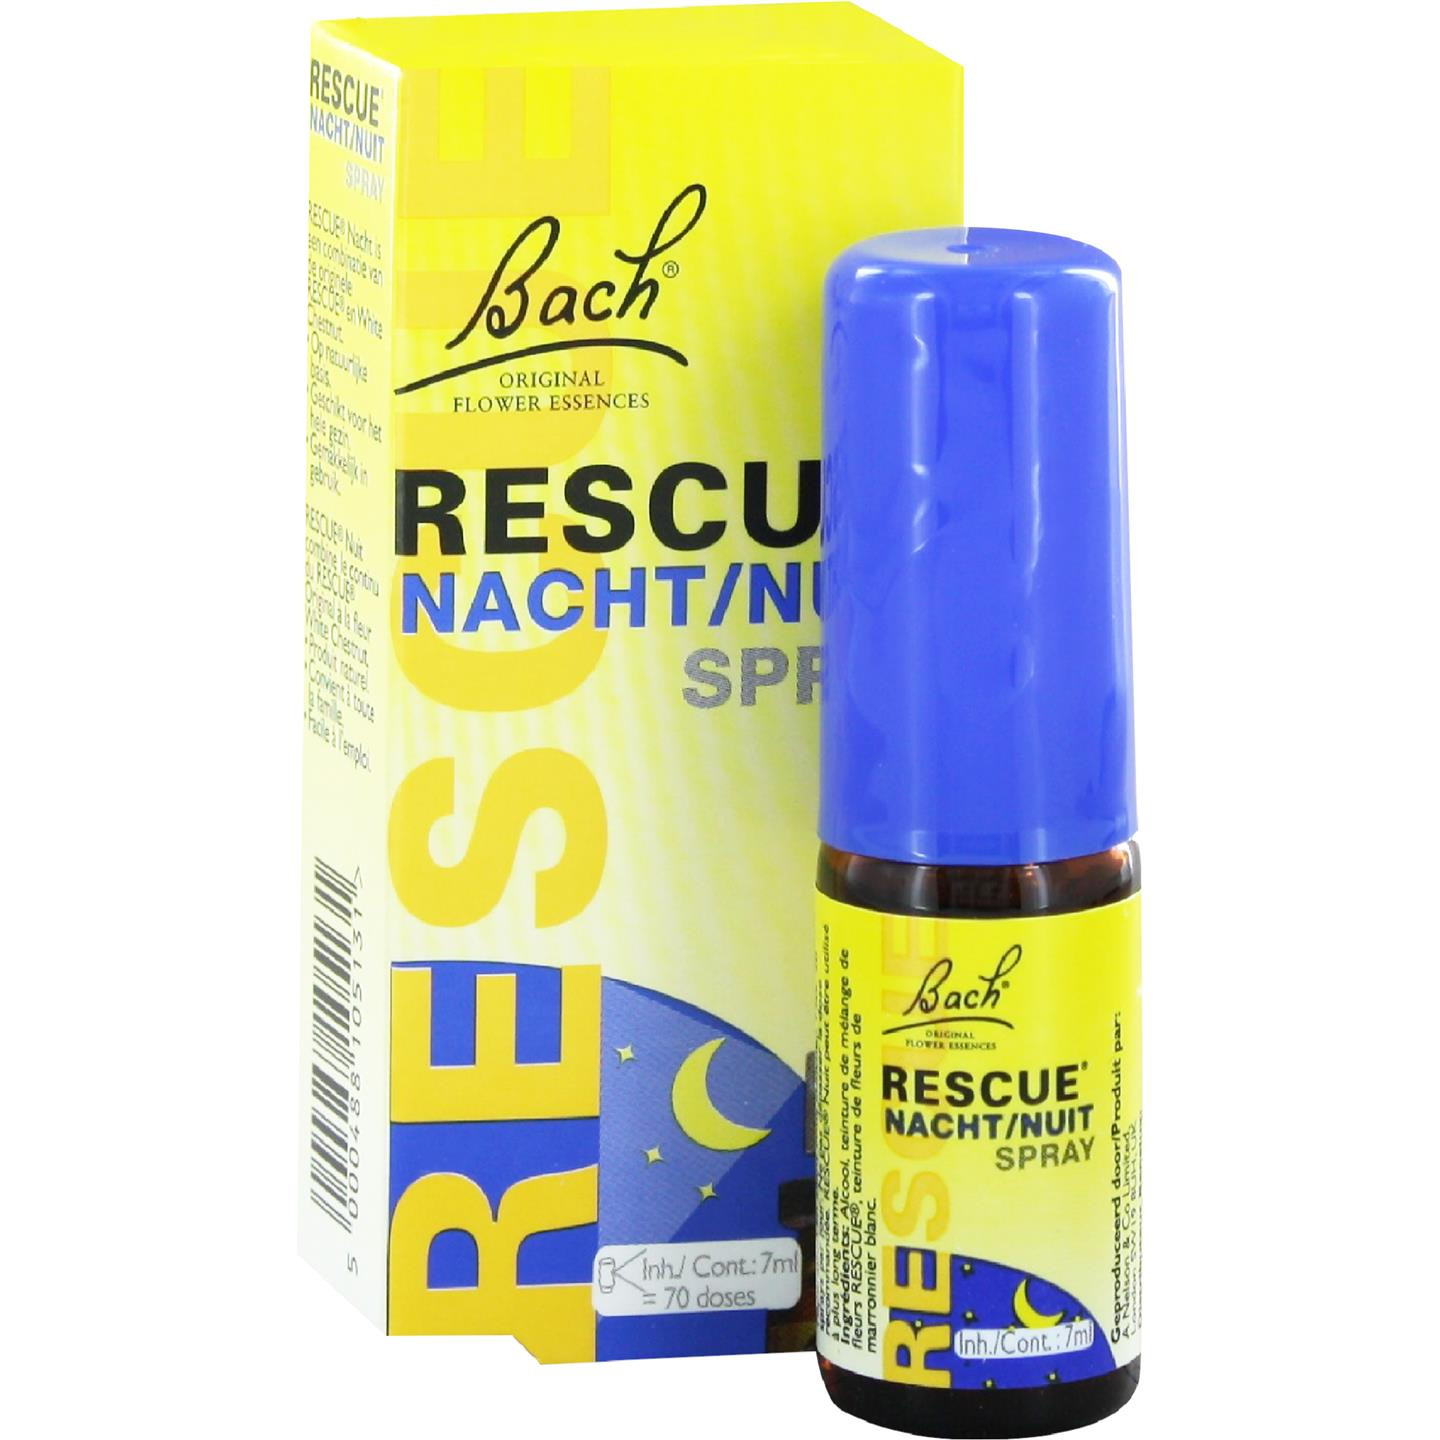 Rescue Nacht Spray